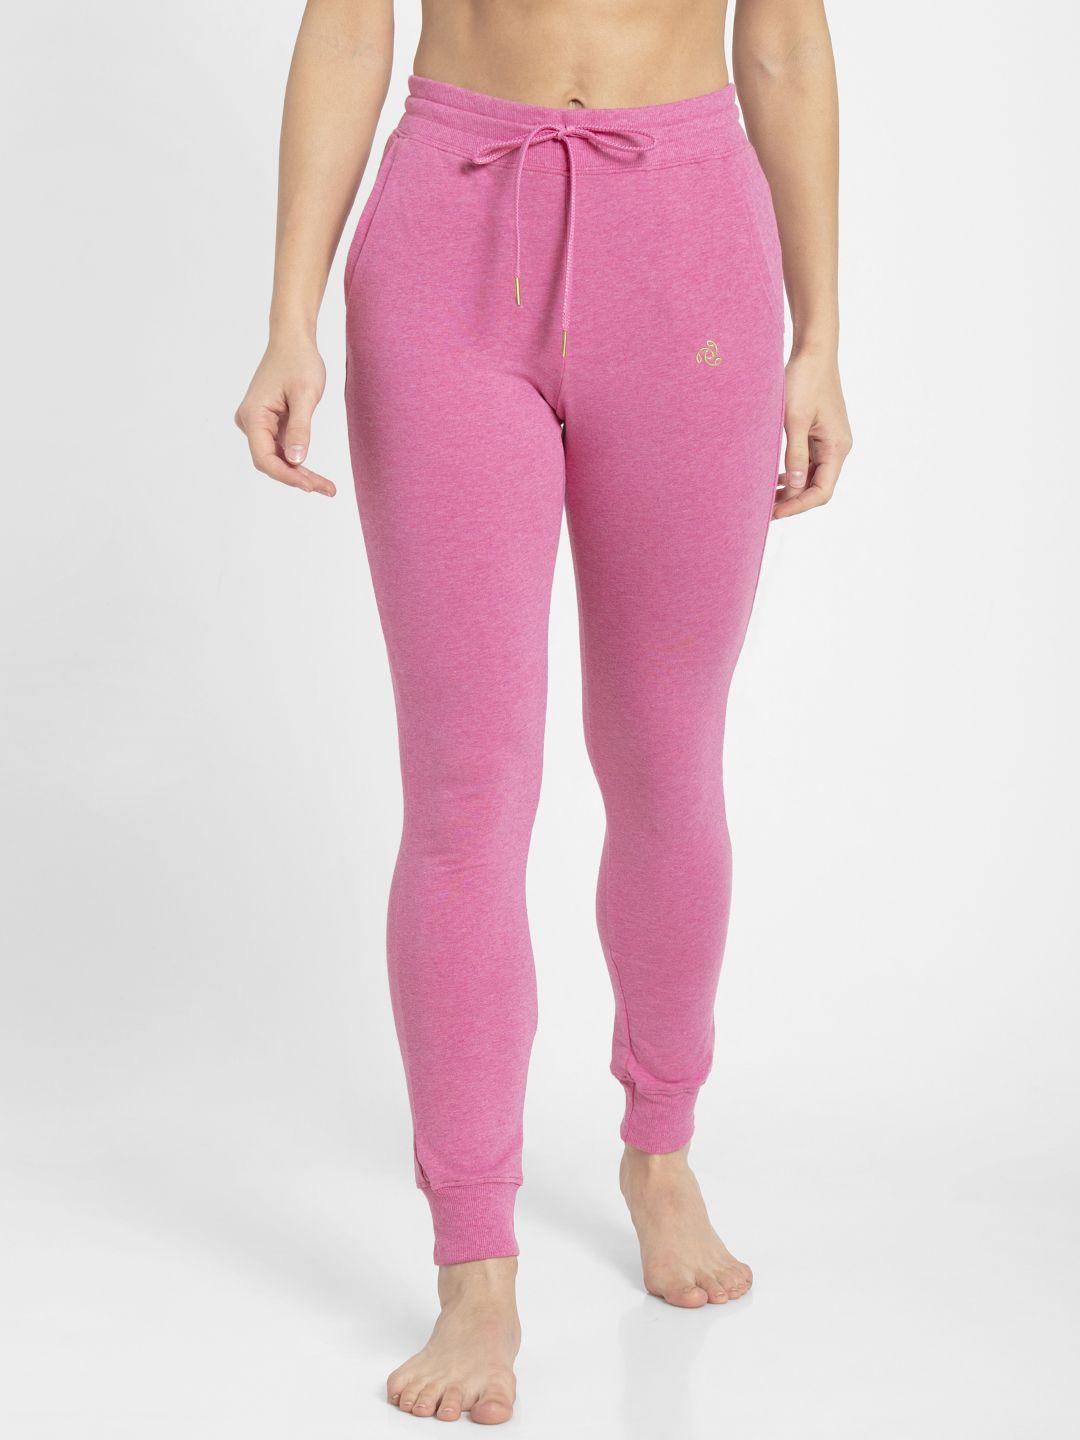 jockey women pink slim fit lounge pants 1323-0103